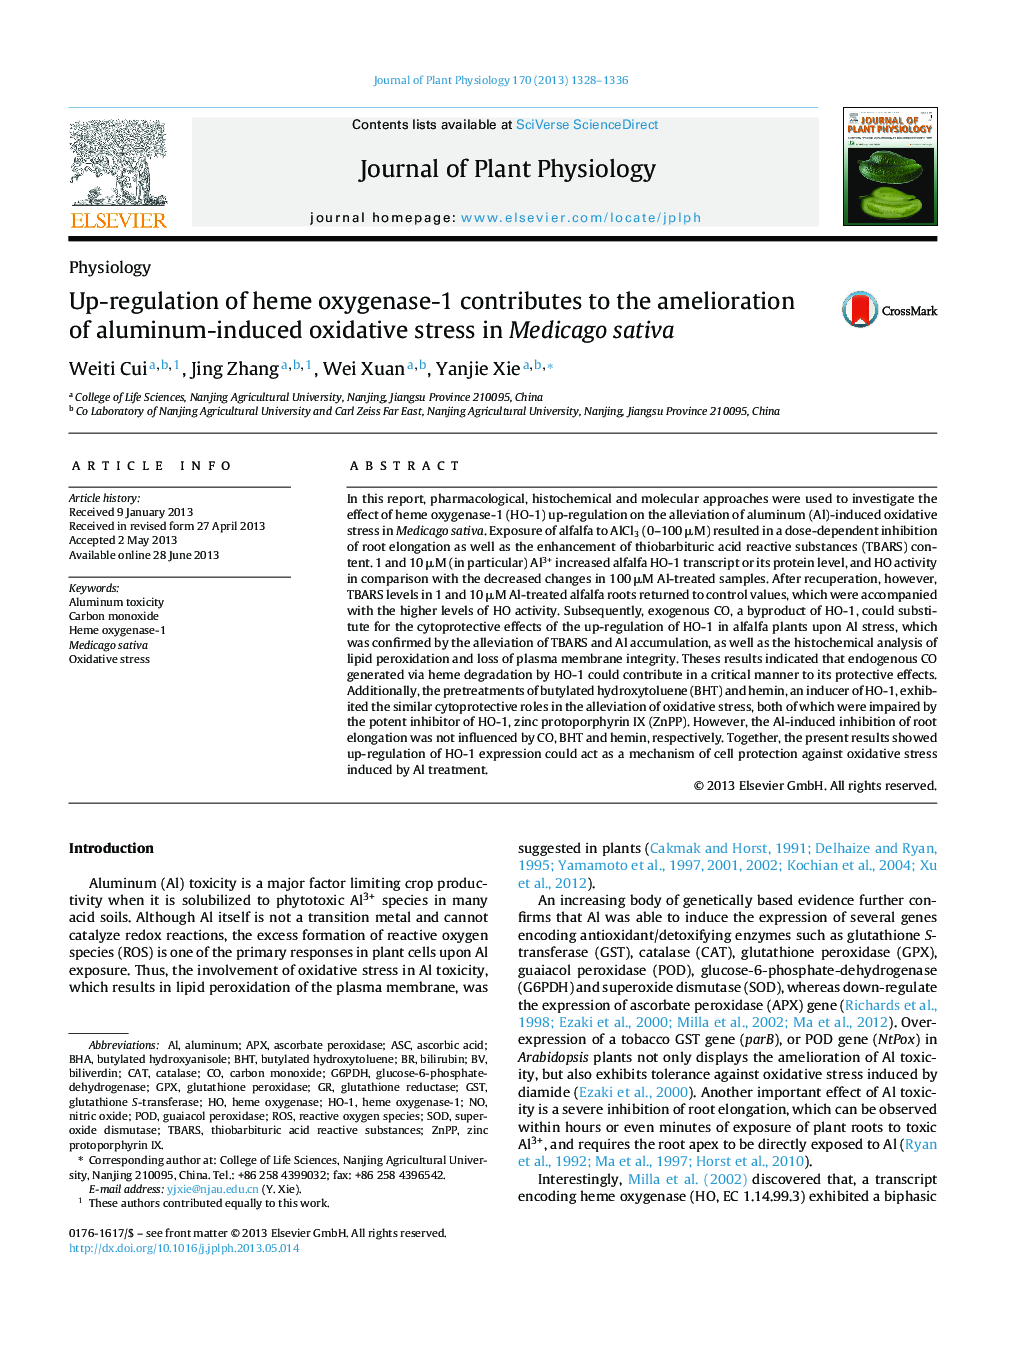 Up-regulation of heme oxygenase-1 contributes to the amelioration of aluminum-induced oxidative stress in Medicago sativa